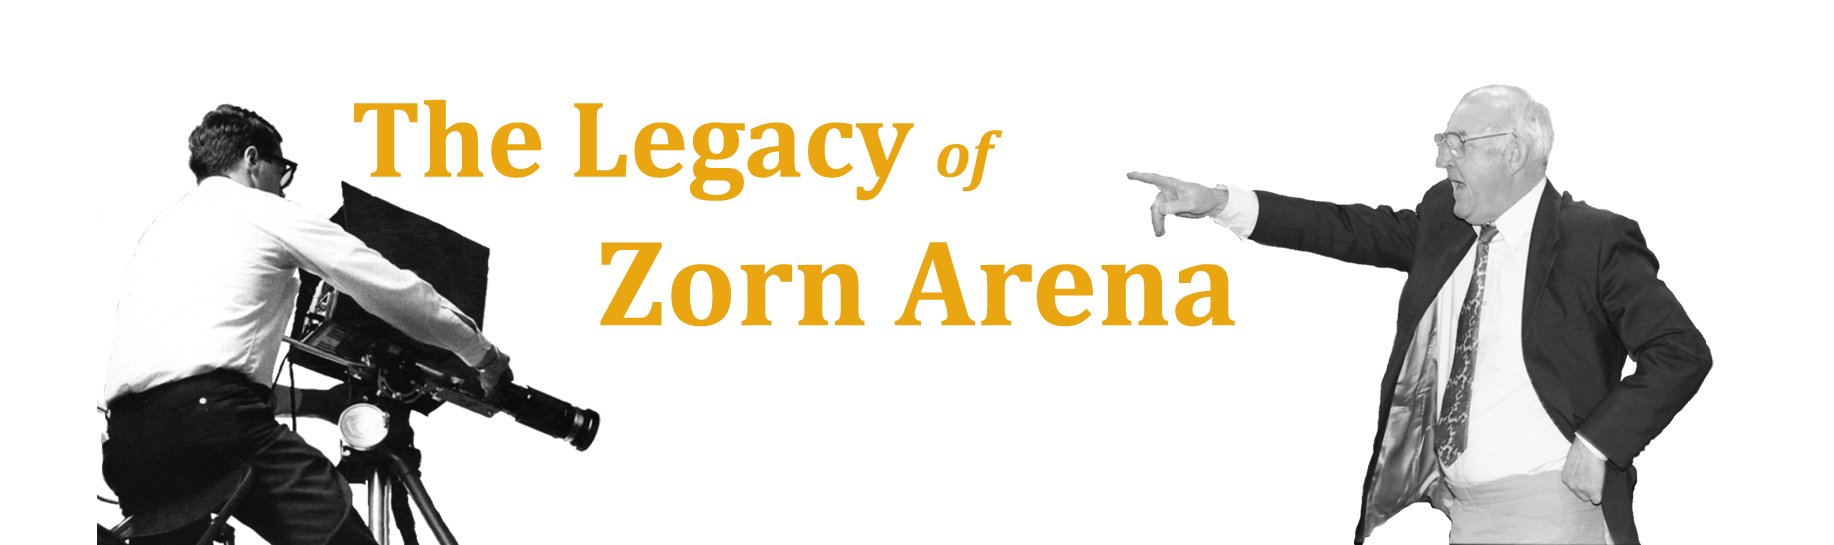 Zorn Arena Legacy